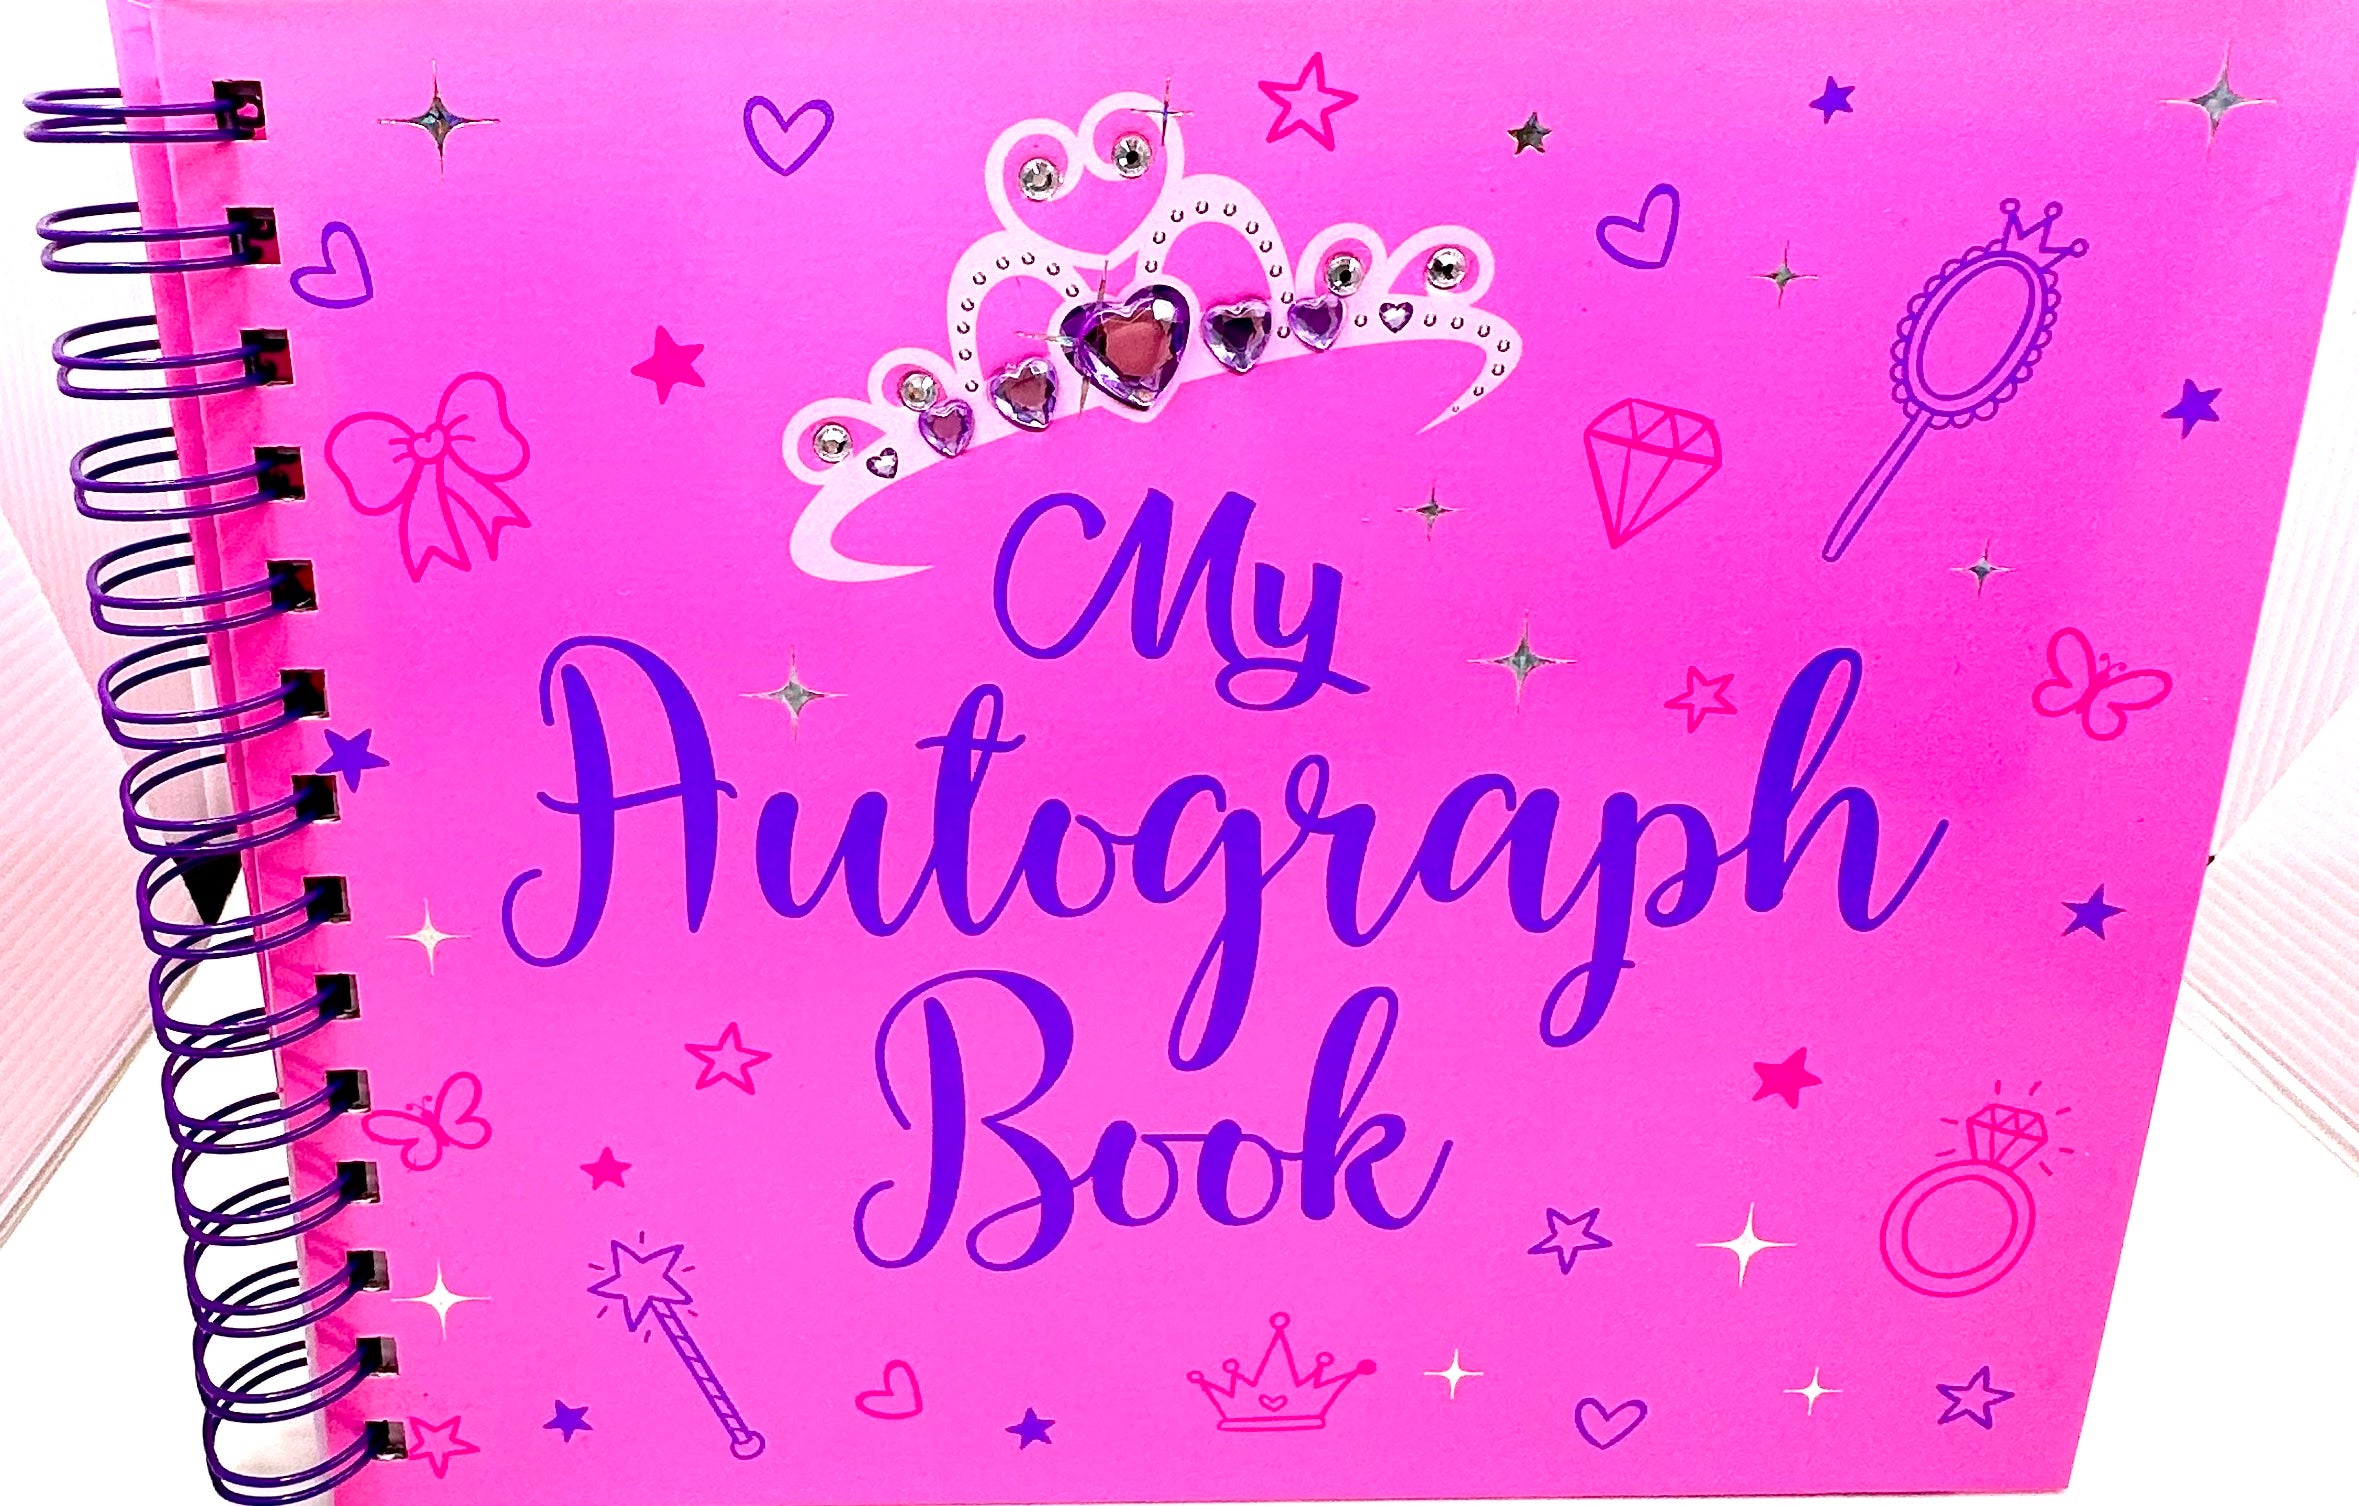 Princess Girl Autograph Book